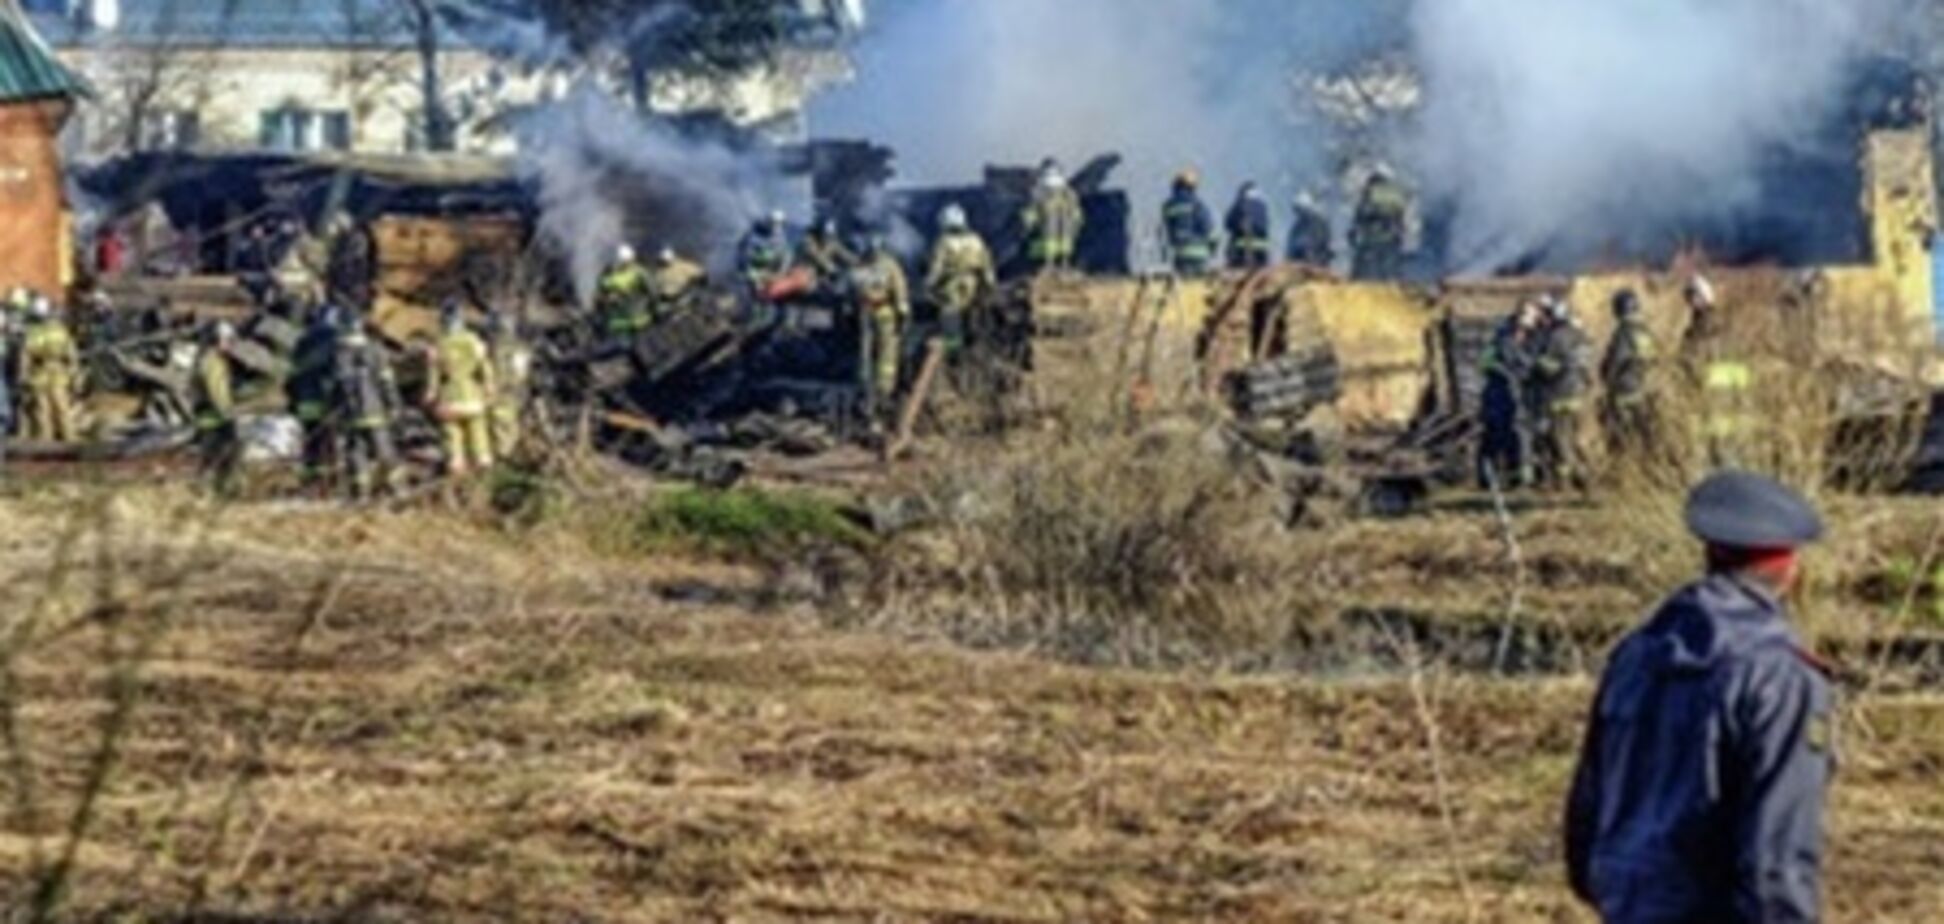 Поиск тел на месте пожара в психбольнице Подмосковья завершен: 38 жертв